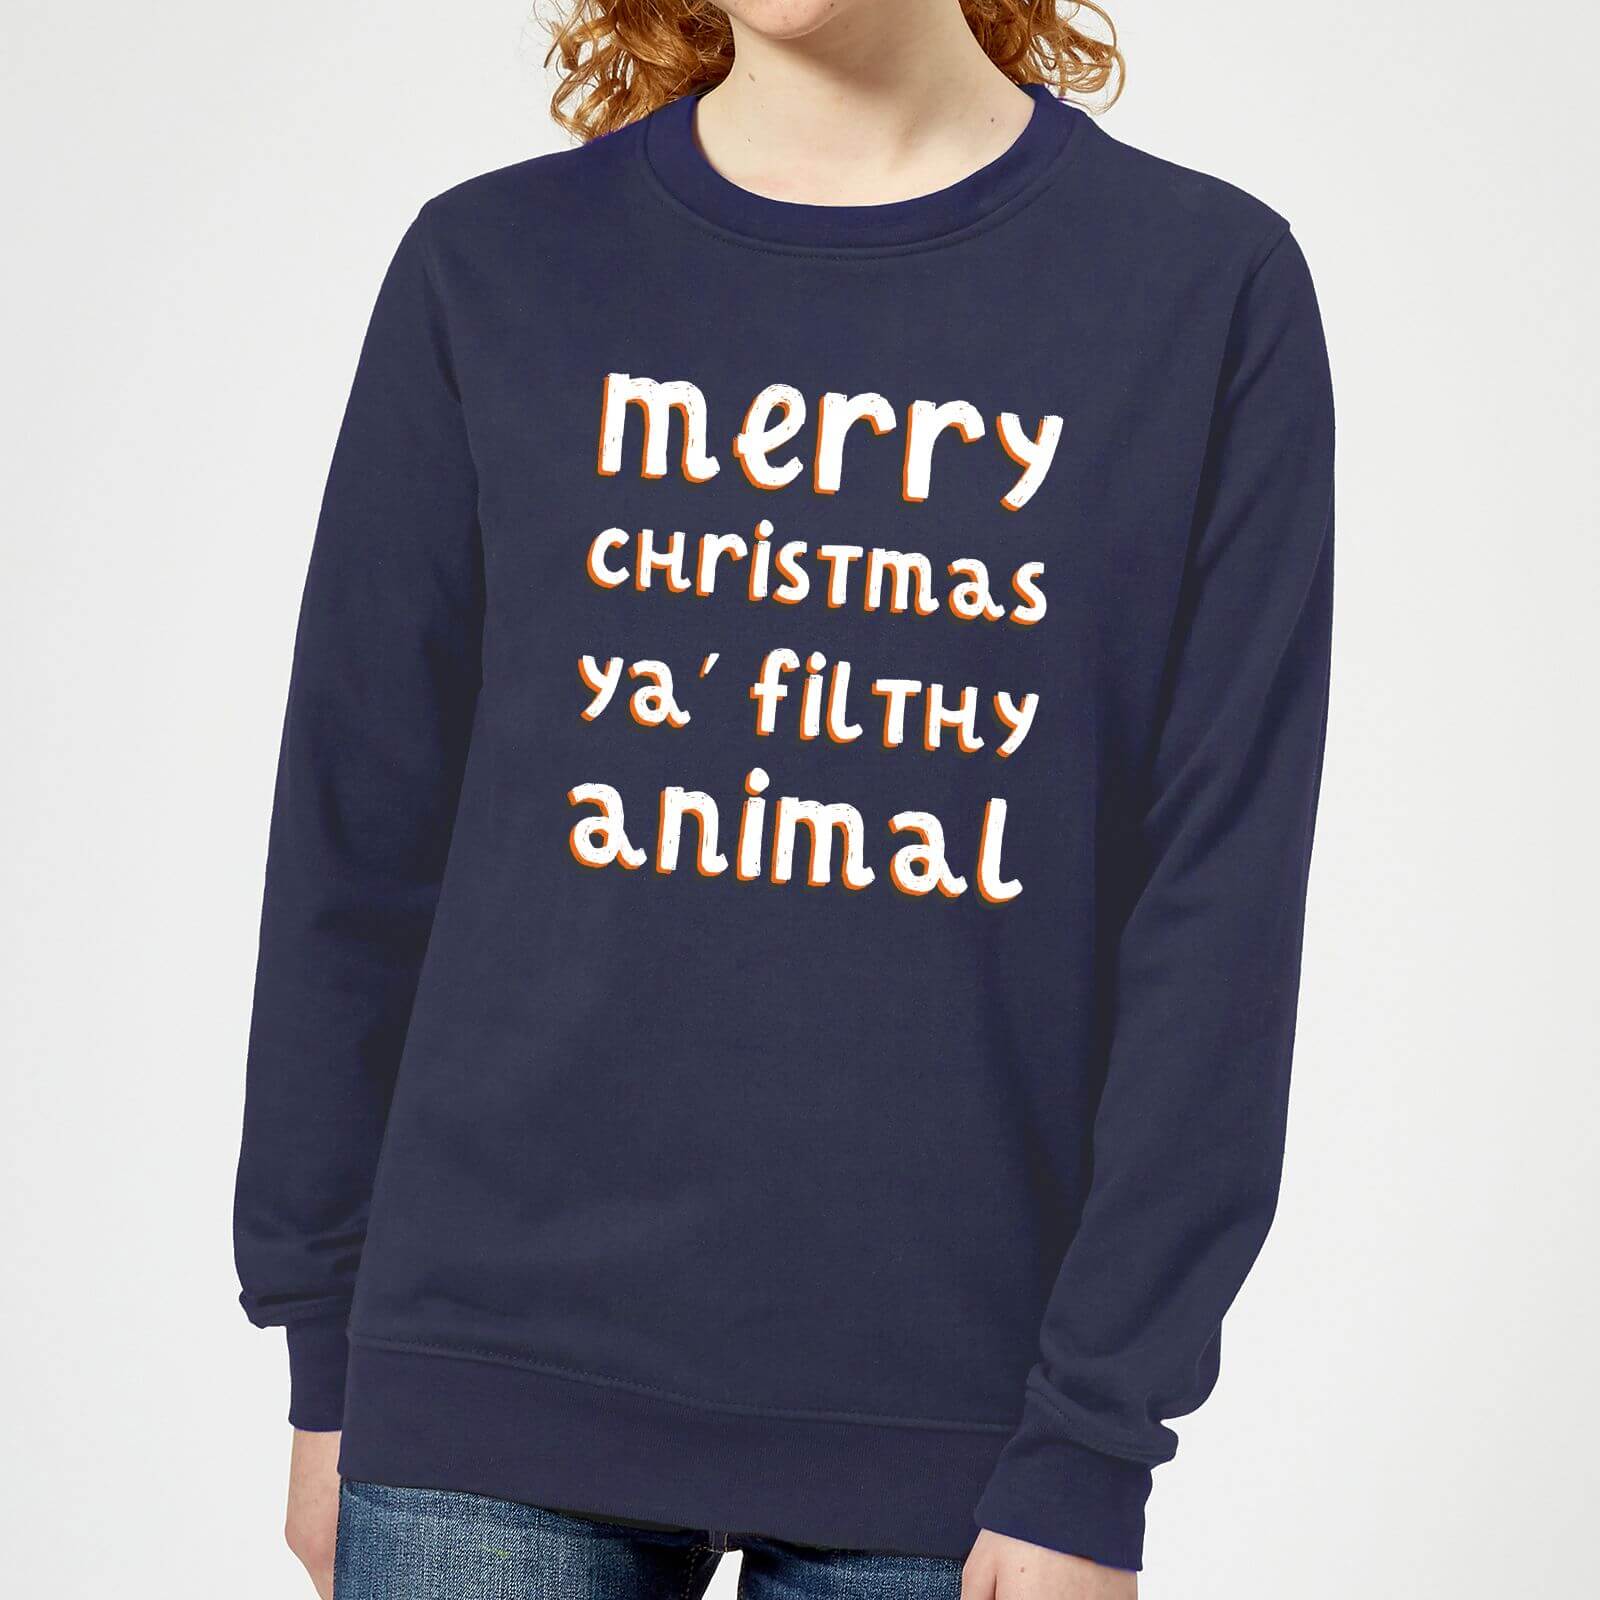 Merry Christmas Ya' Filthy Animal Women's Christmas Sweatshirt - Navy - XS